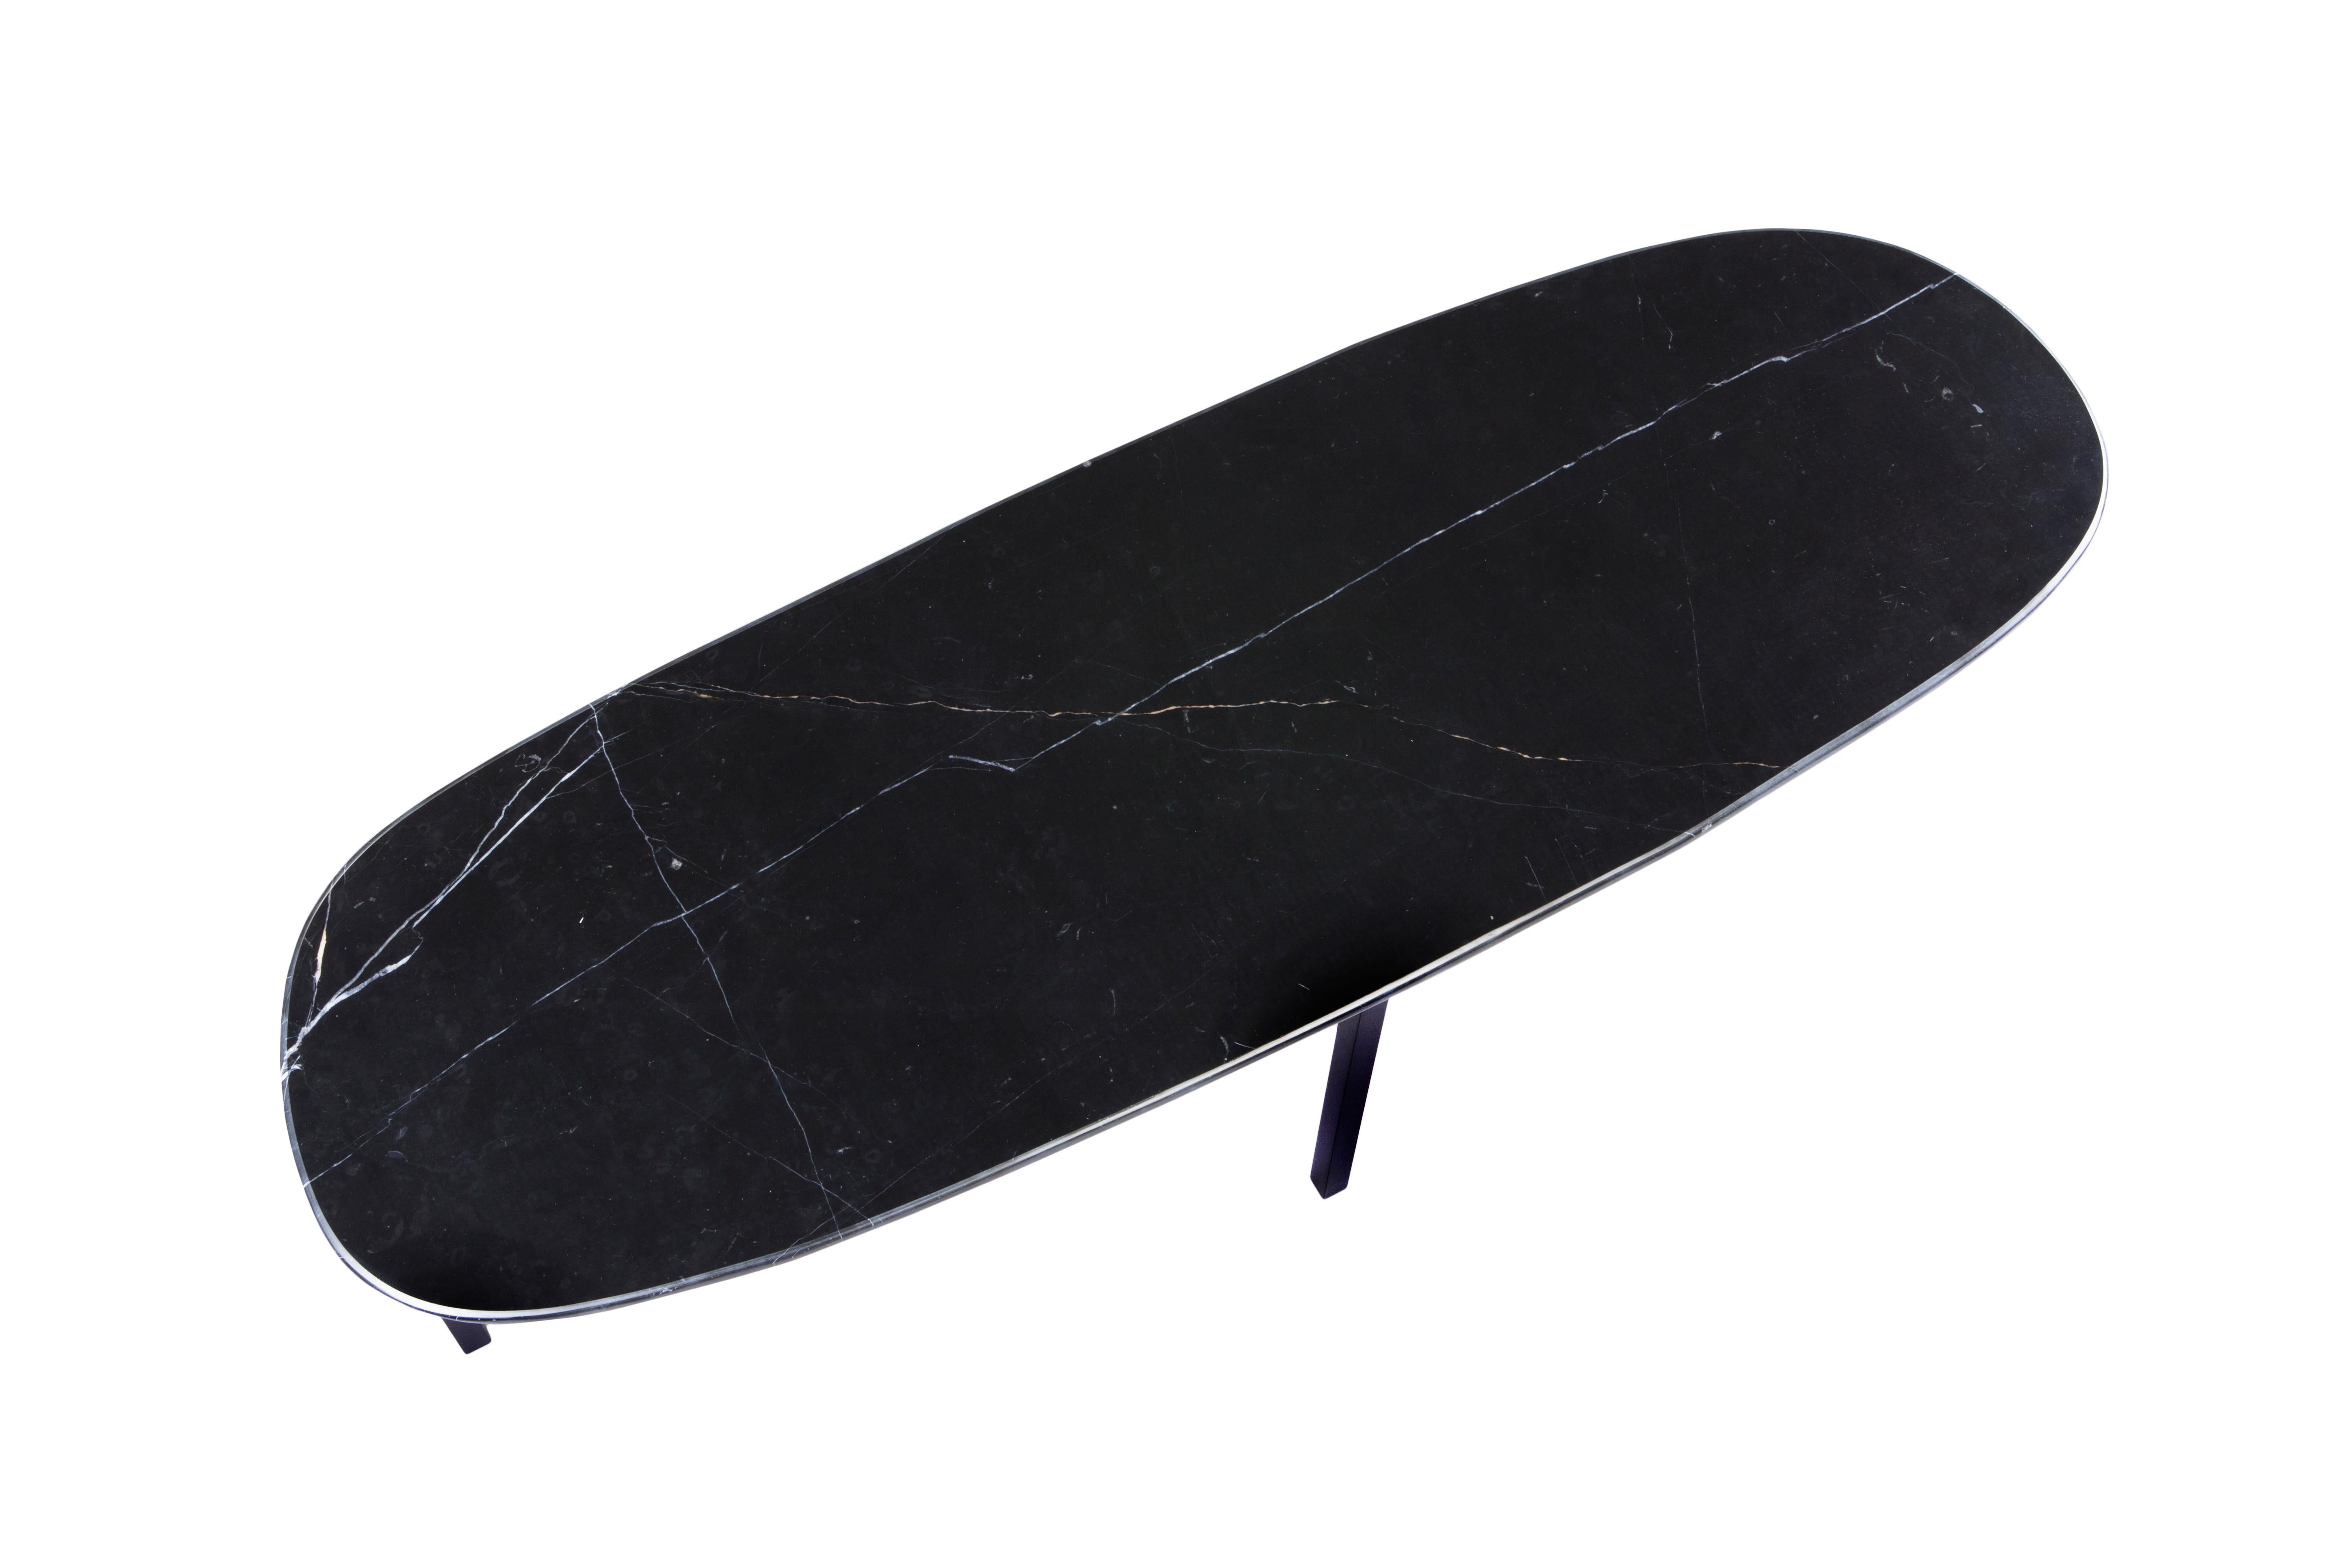 Table basse Uzun Tas par Rectangle Studio
Dimensions : L 120 x D 40 x H 43 cm 
MATERIAL : Marbre noir, peinture noire sur métal

Tas_Uzun Sehpa a été façonné et terminé par le concepteur de la table en marbre.
C'est la raison pour laquelle chaque